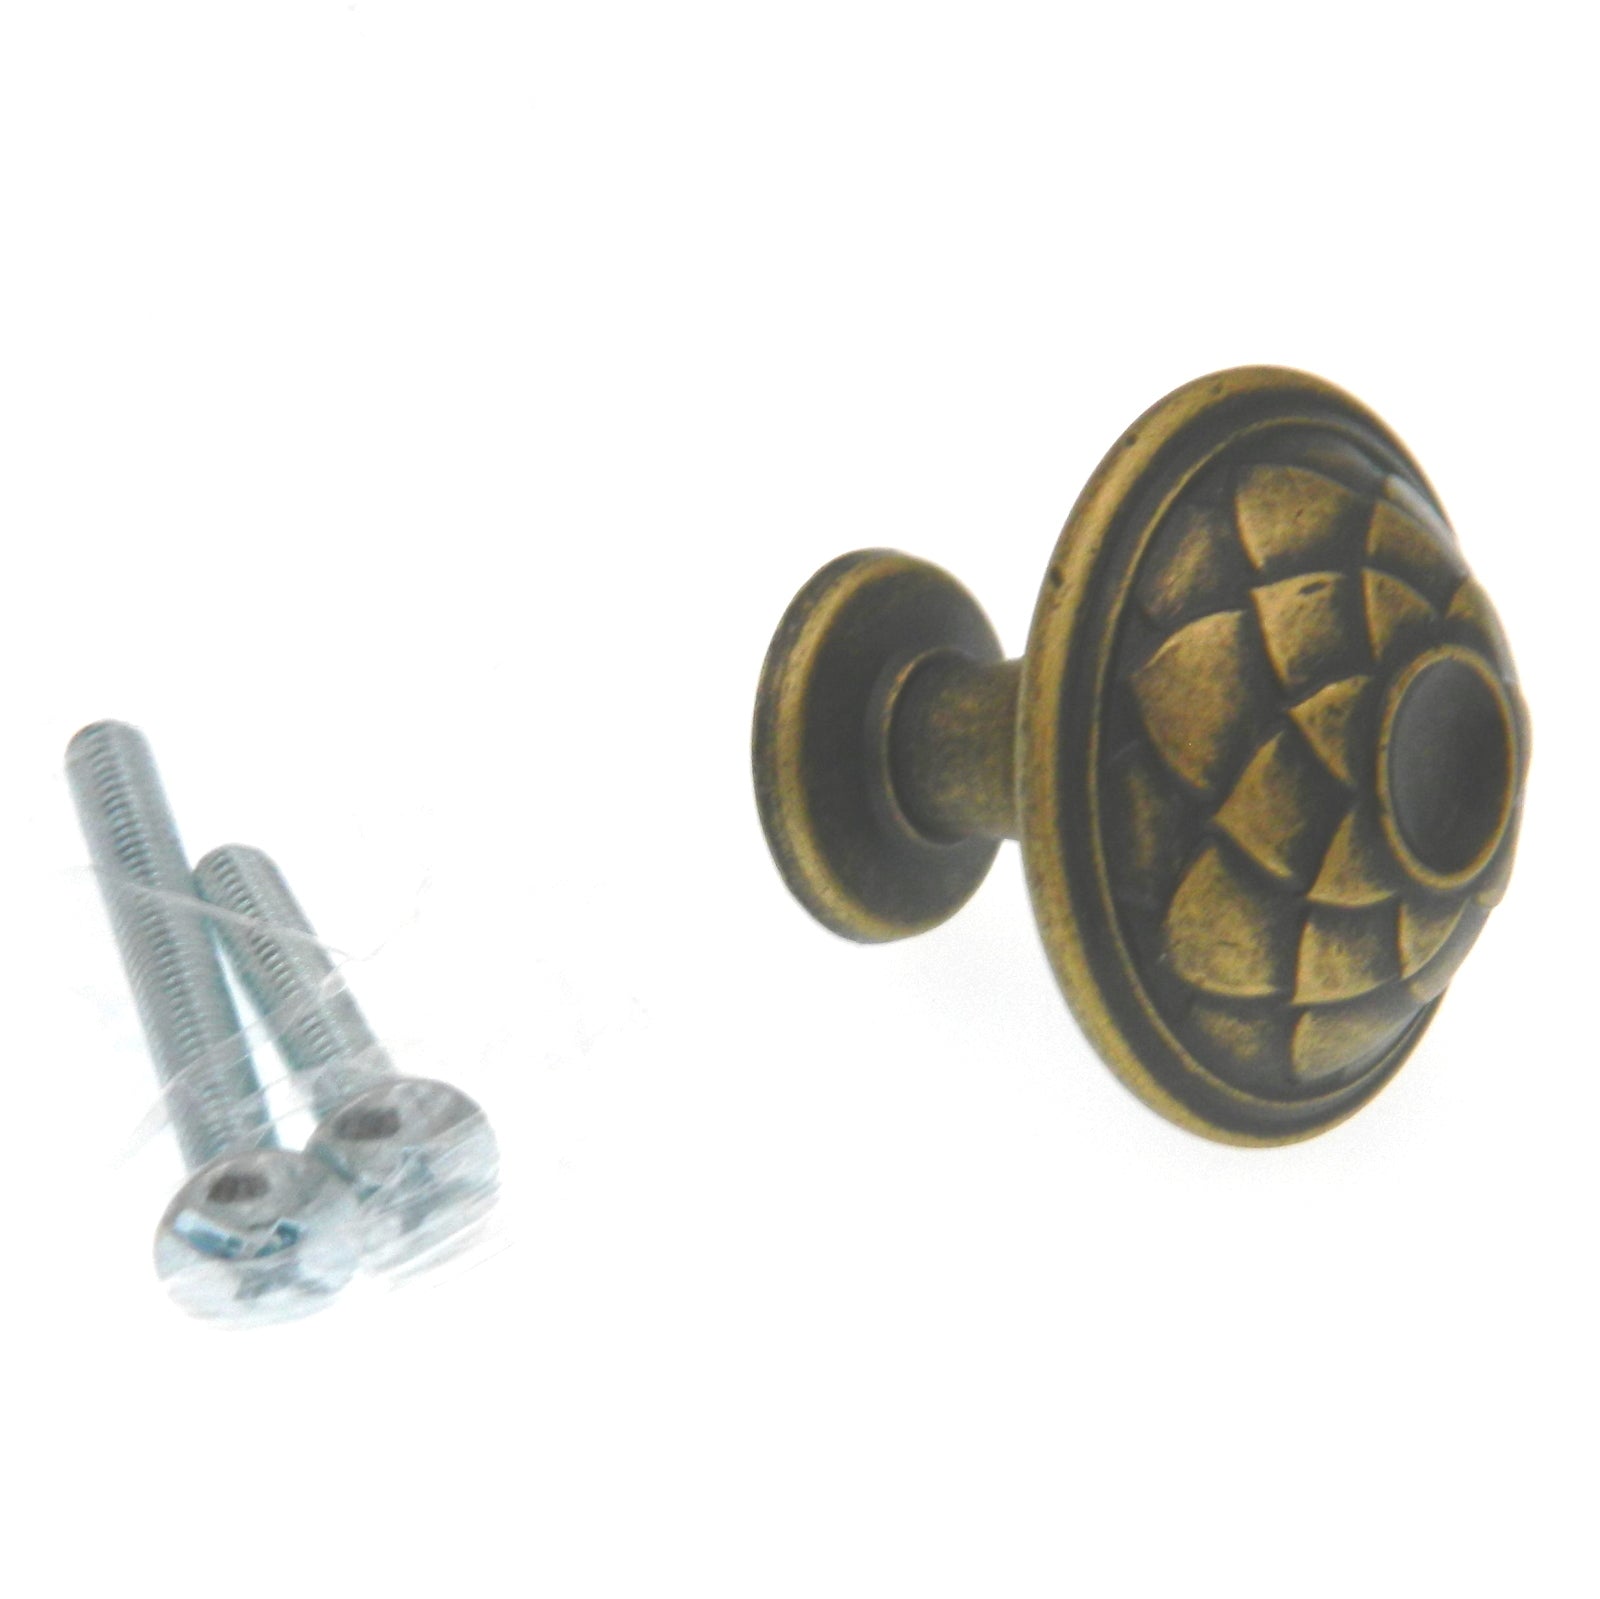 Amerock Padma Distressed Brass 1 3/8" Round Cabinet Pull Knob BP53027DBS